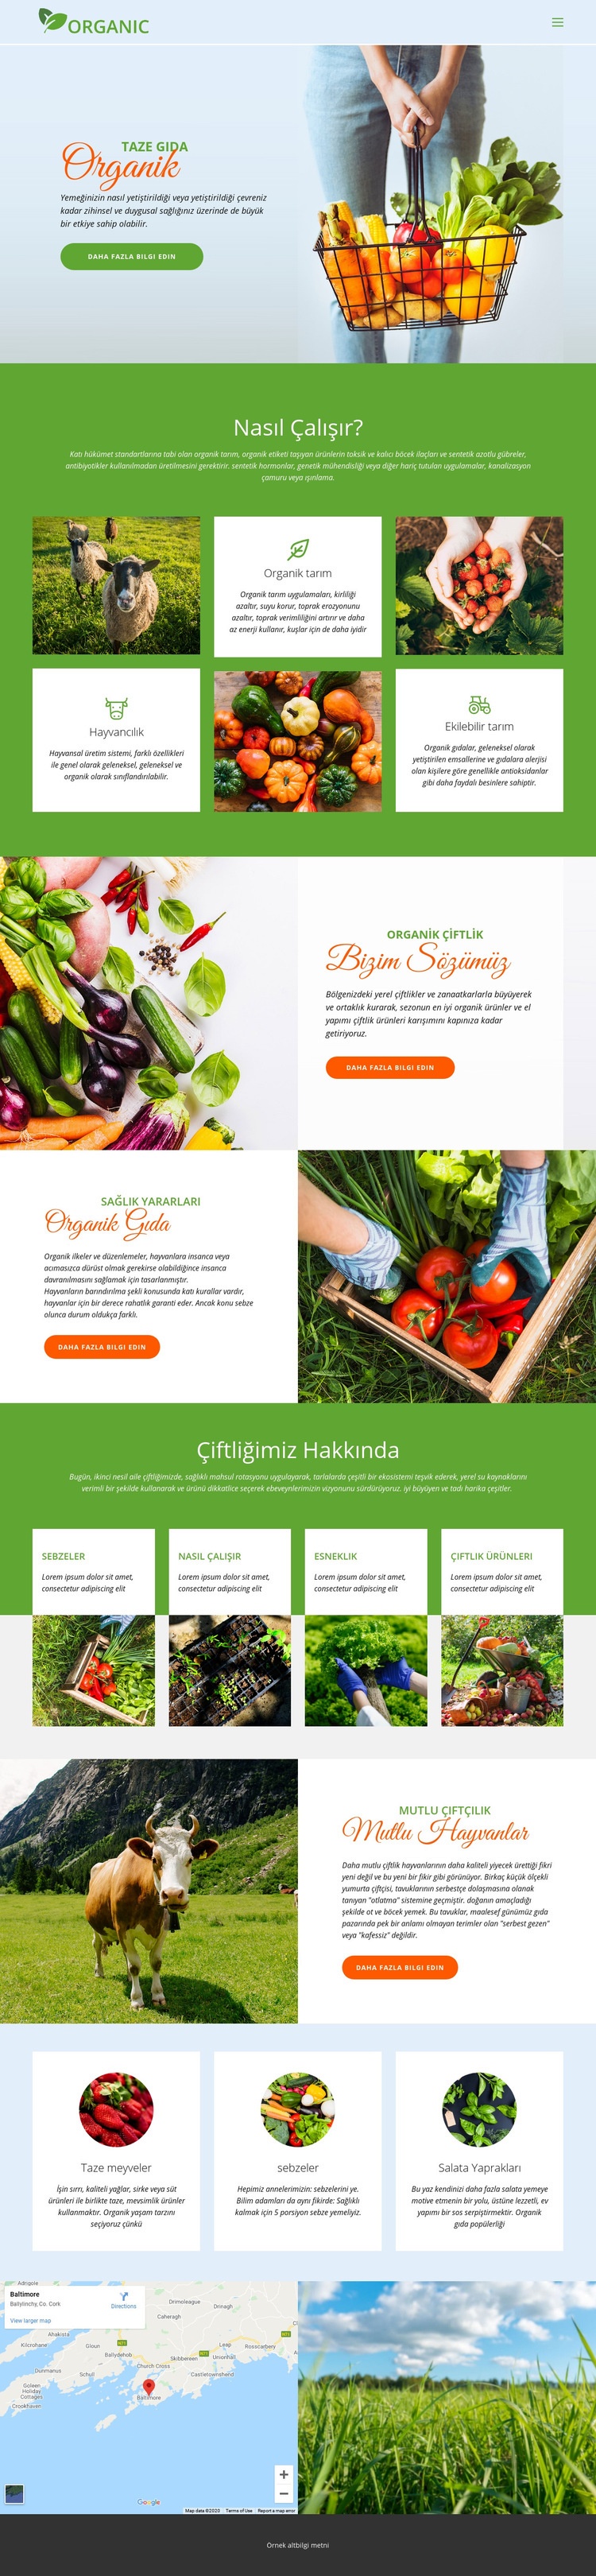 En iyi organik yiyecekleri yiyin WordPress Teması